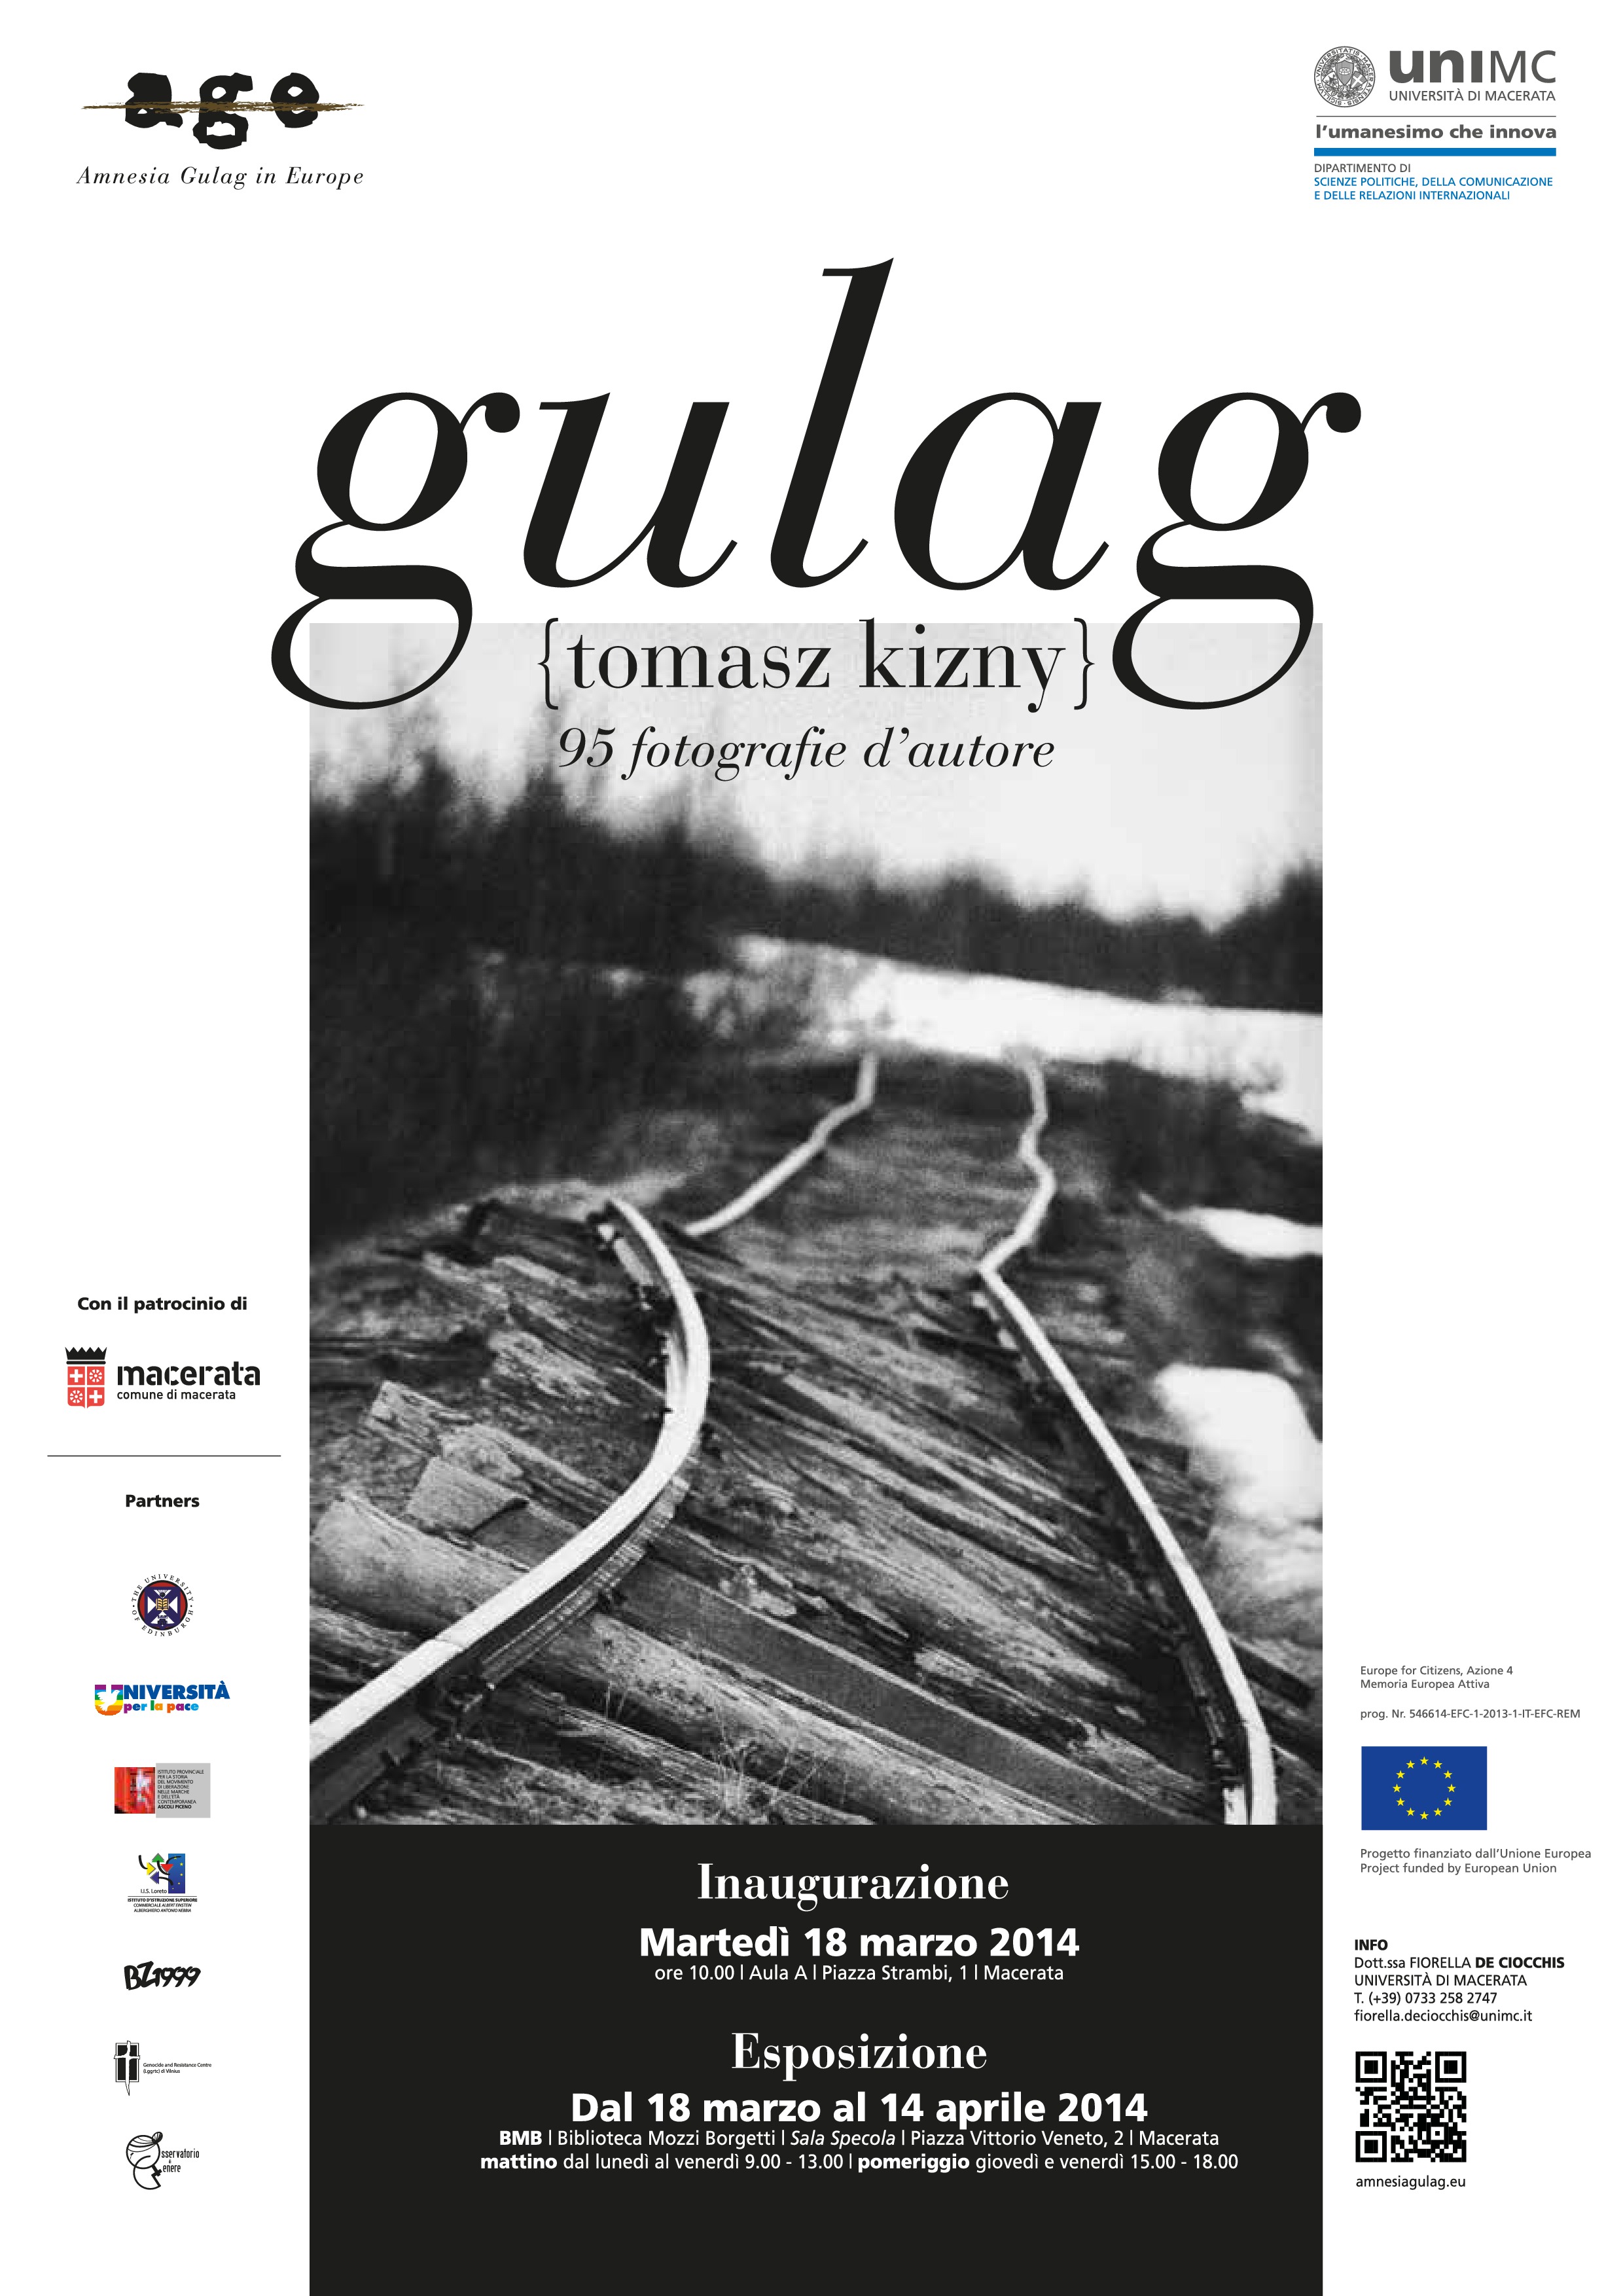 Photo exhibition “Gulag” by Tomasz Kizny